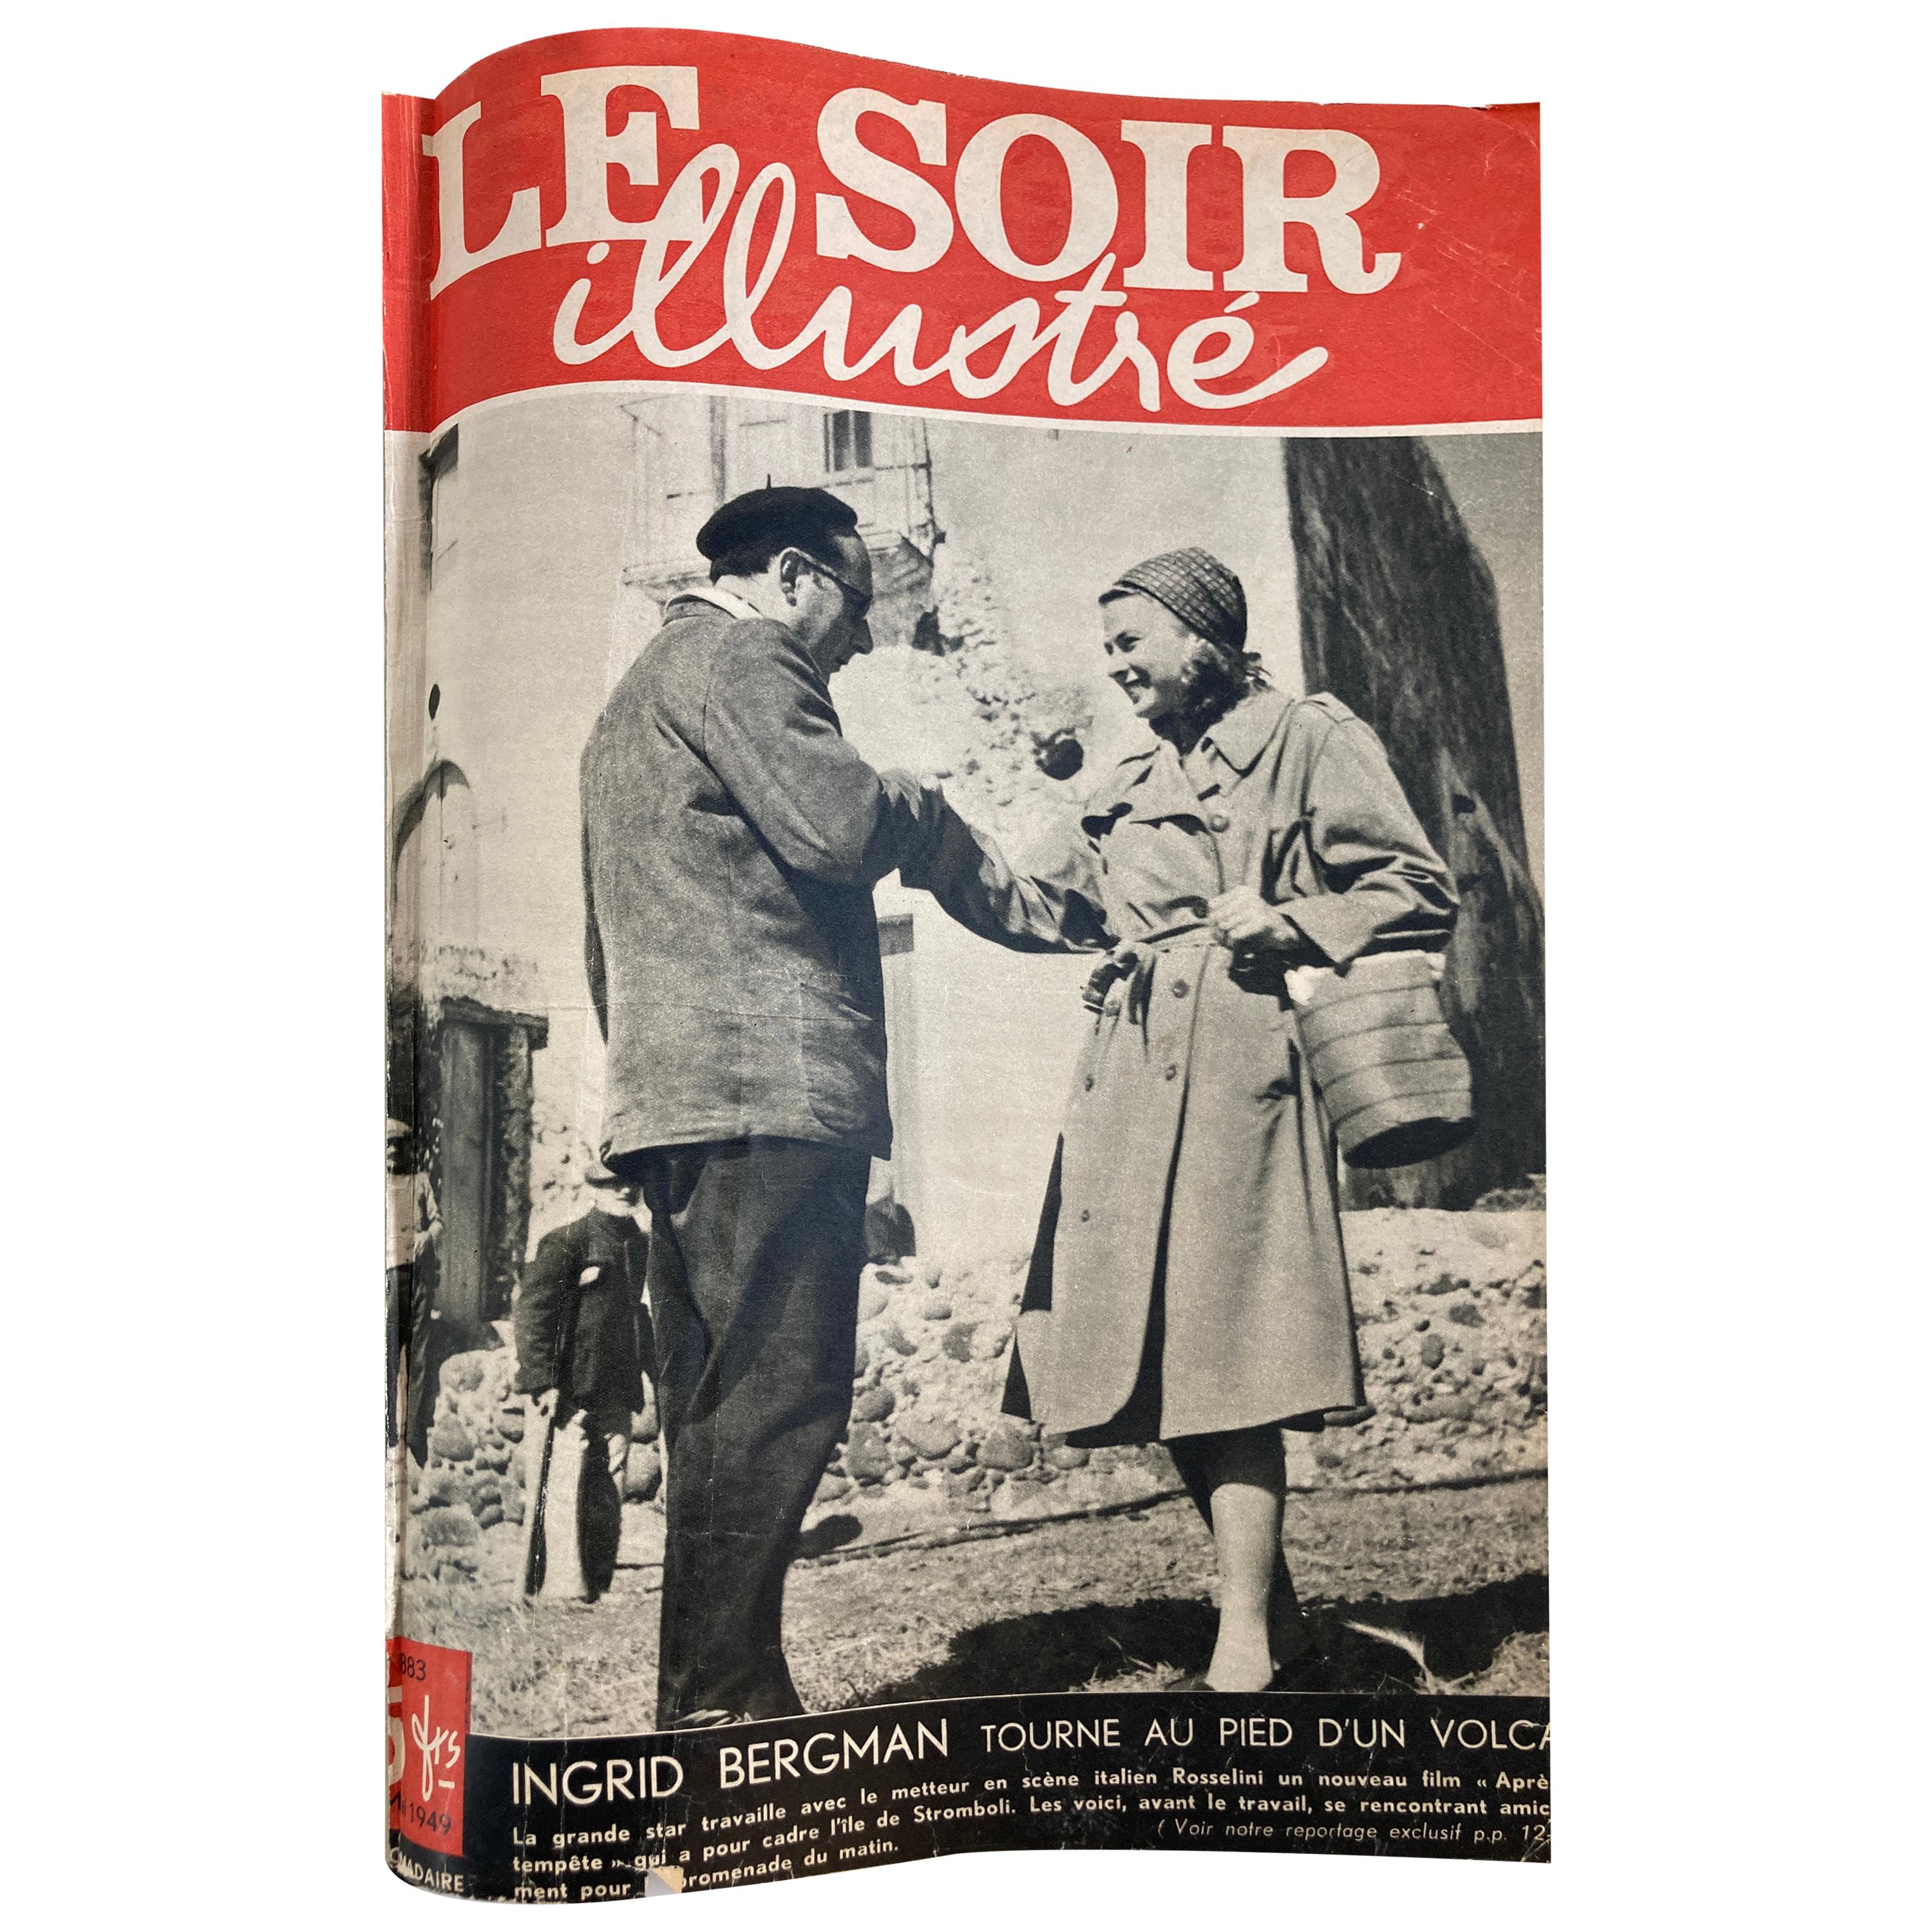 Le Soir Illustre, Mai 1949 to Sept 1949 French Magazines Paris France For Sale